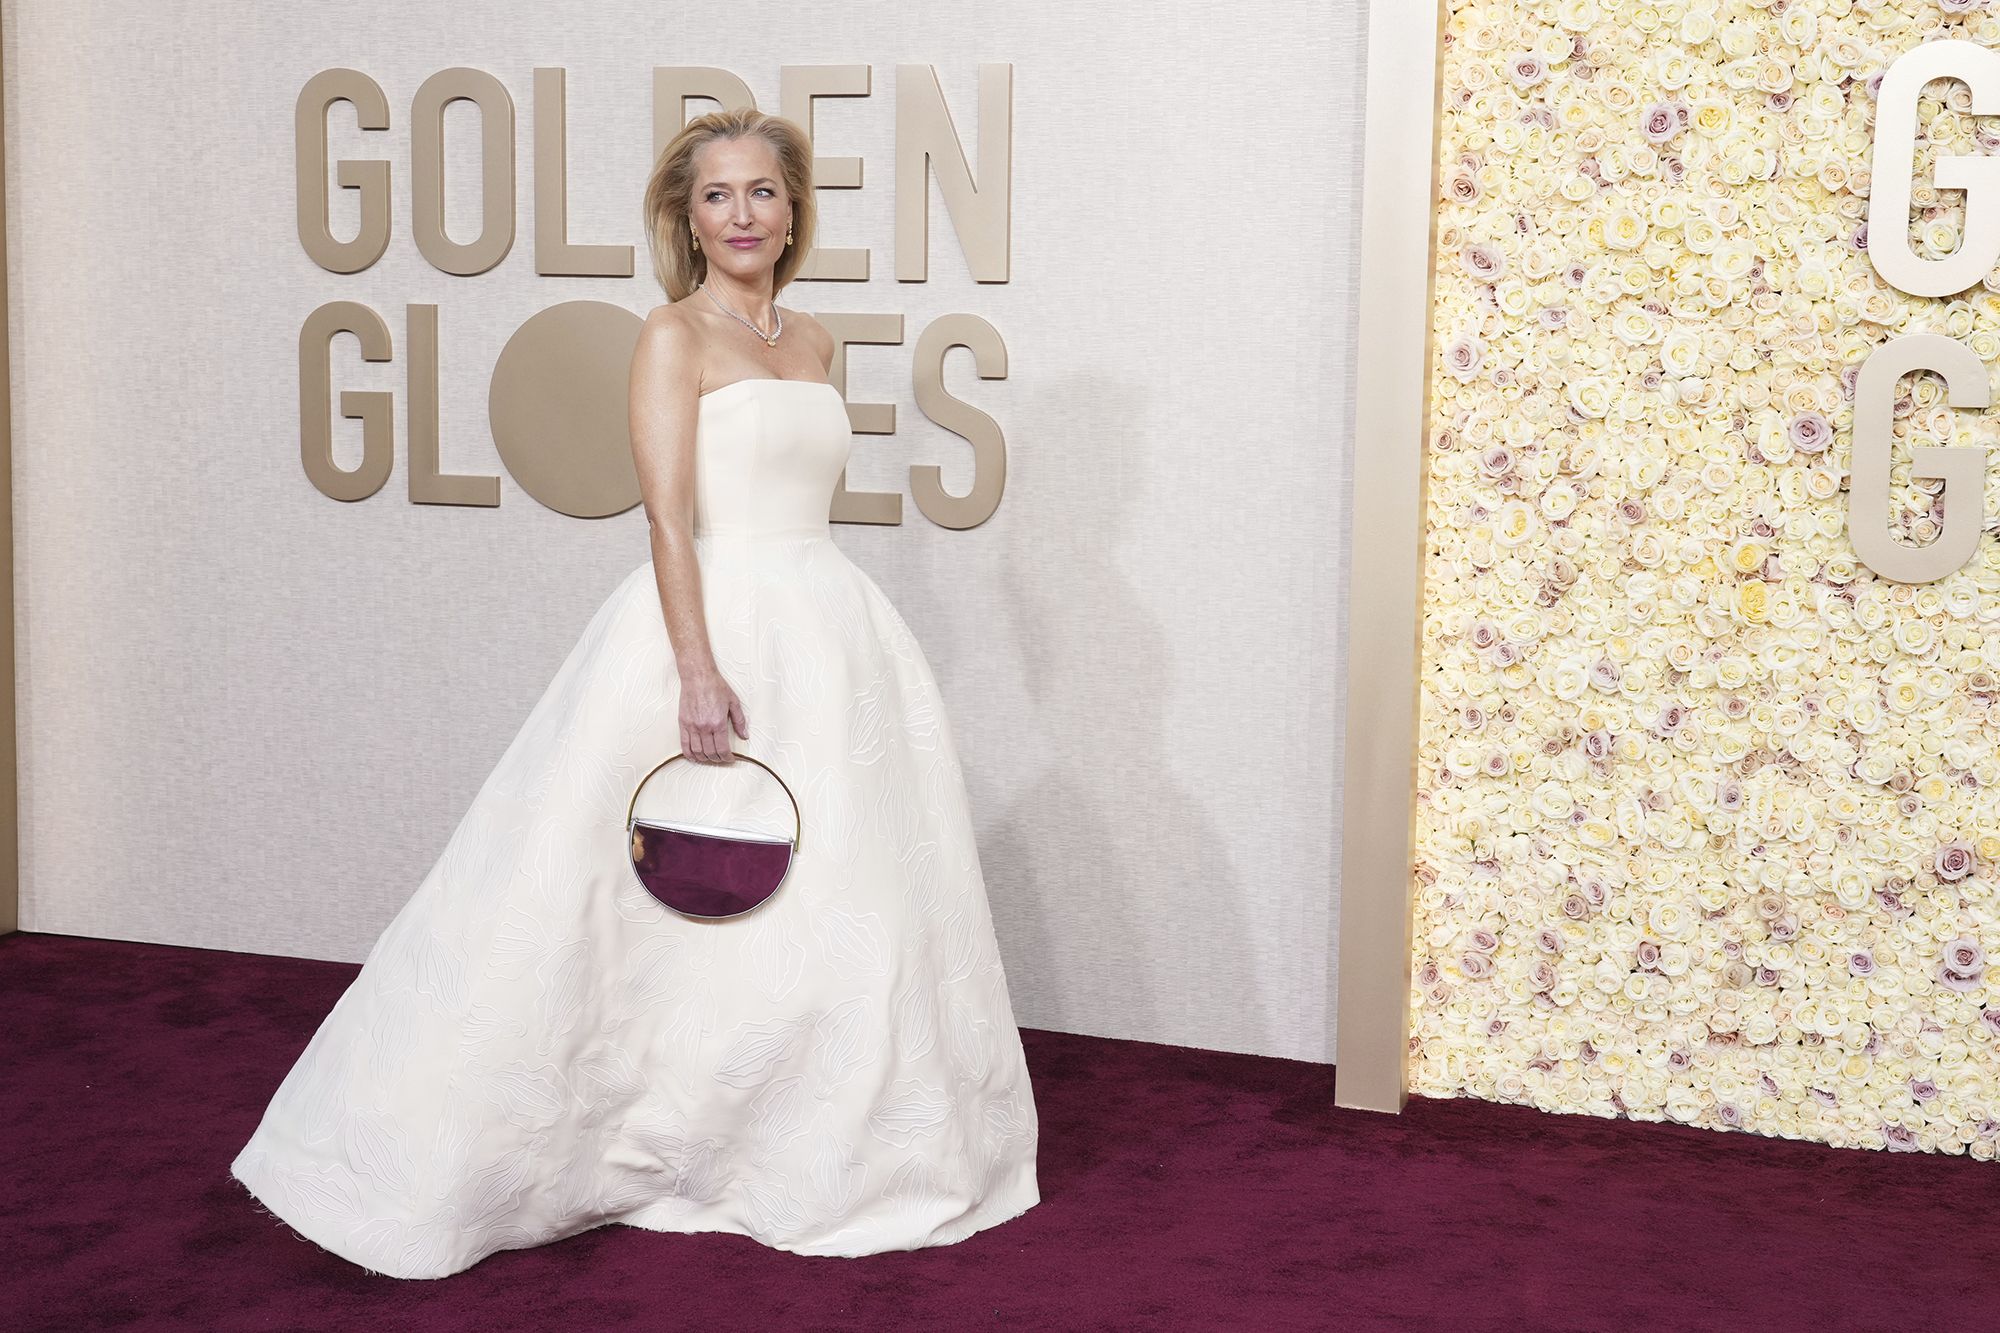 Gillian Anderson Dazzling Golden Globes Dress: A Closer Look